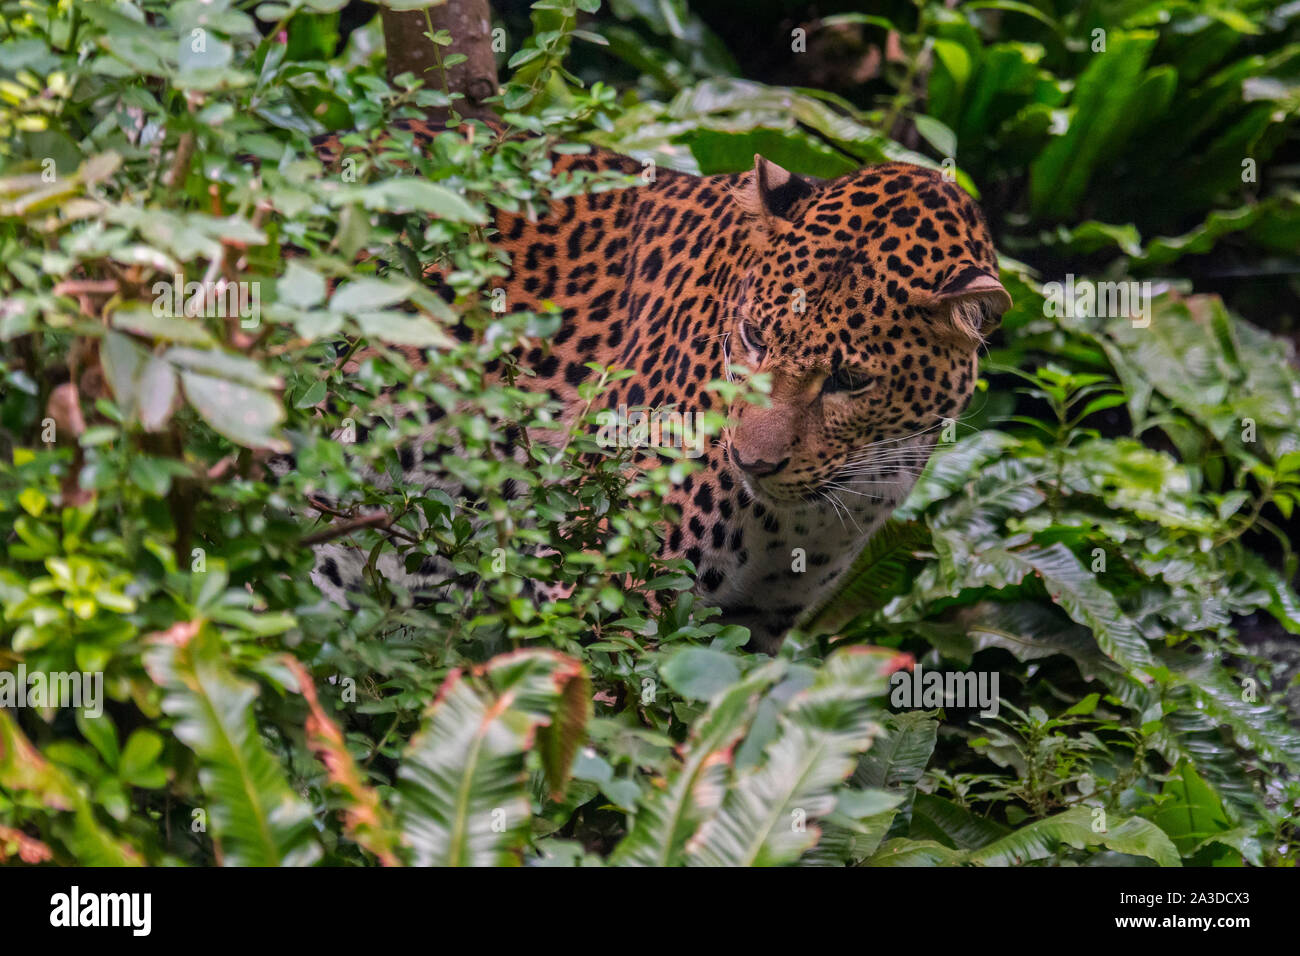 Javan Leopard (Panthera pardus Melas) Jagd im tropischen Regenwald, native auf der indonesischen Insel Java Stockfoto